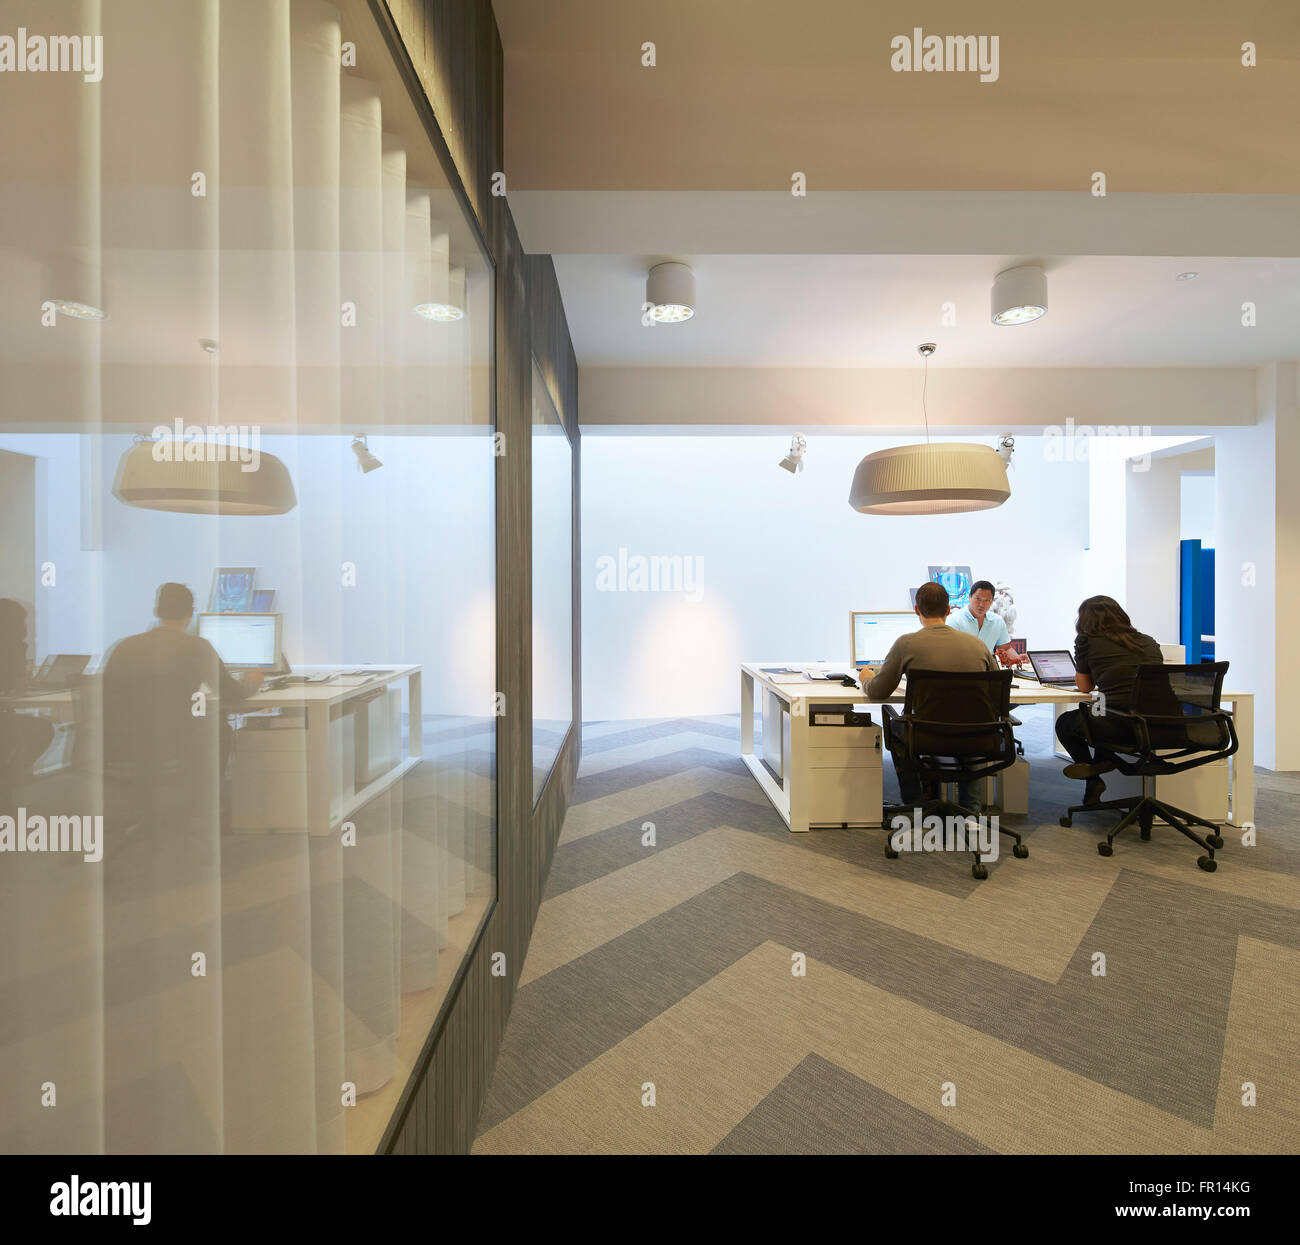 Oficina sala con piso de espiga patrón. Pliegue 7 oficinas en Londres, Reino Unido. Arquitecto: Paul Croft Studio, 2014. Foto de stock